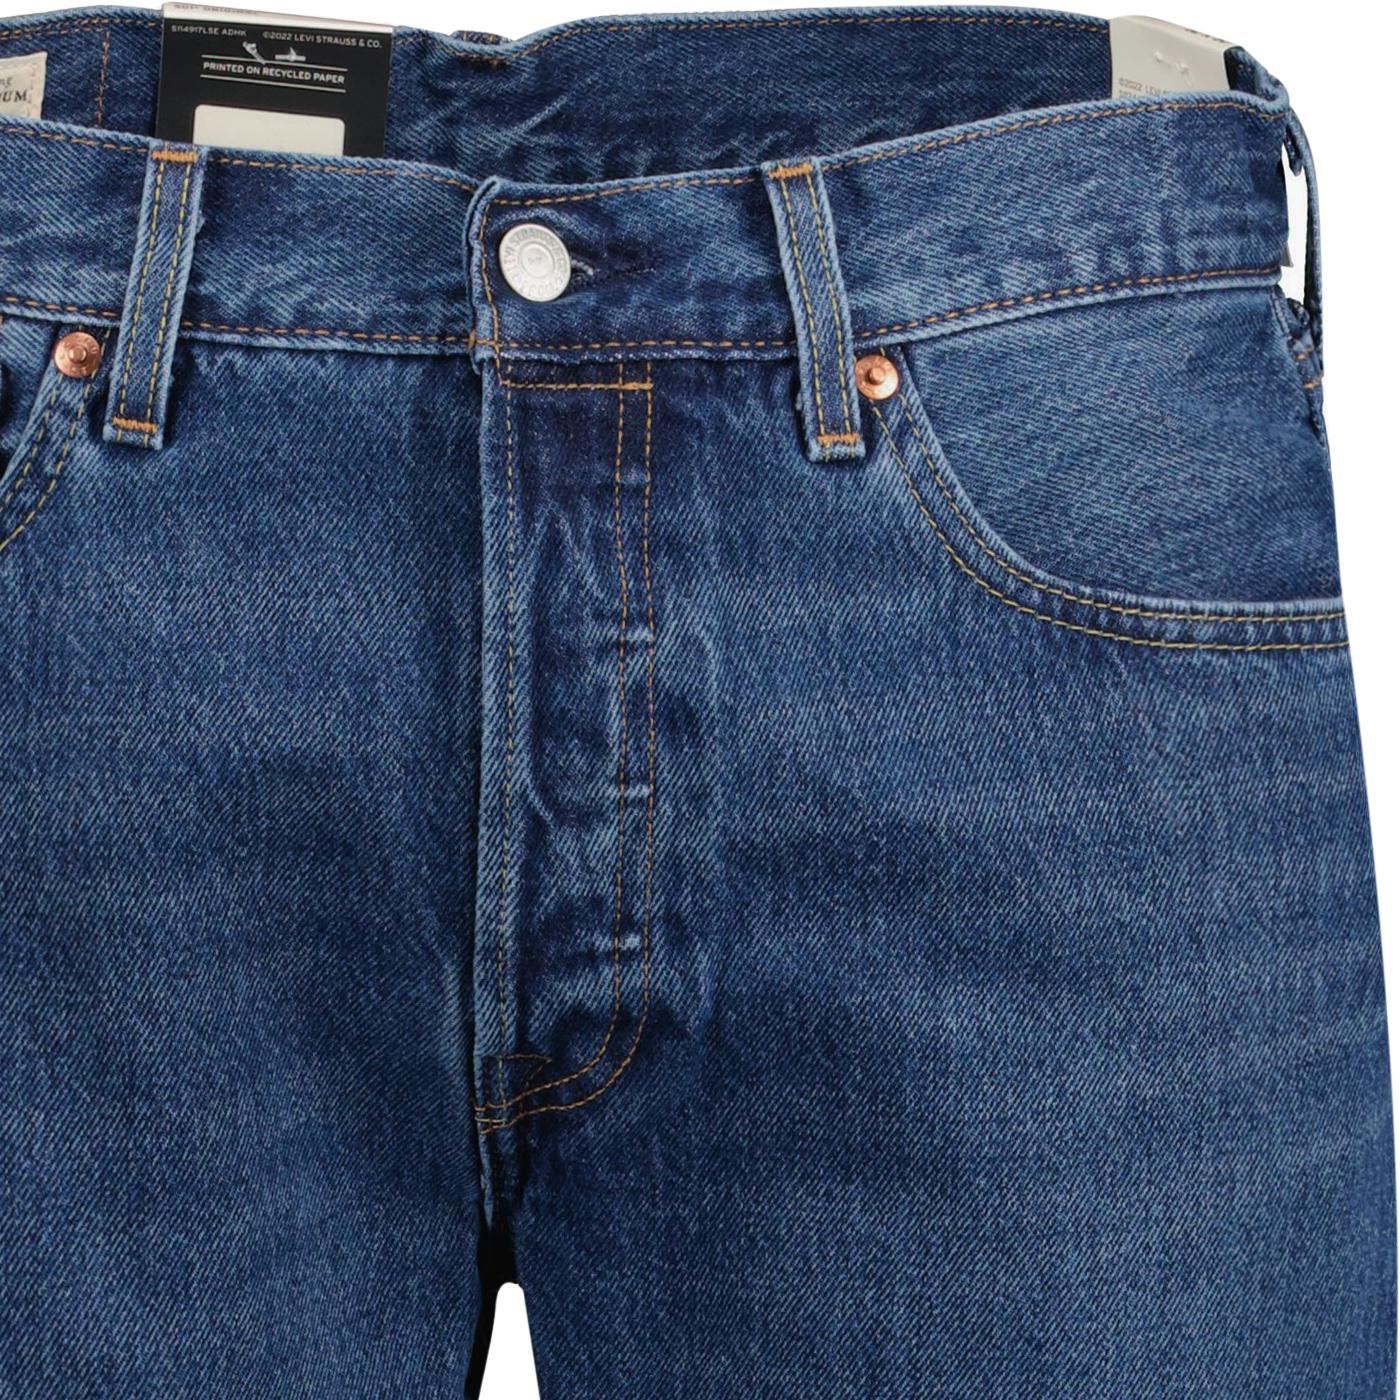 LEVI'S® 501® Original Straight Jeans in Medium Indigo Stonewash